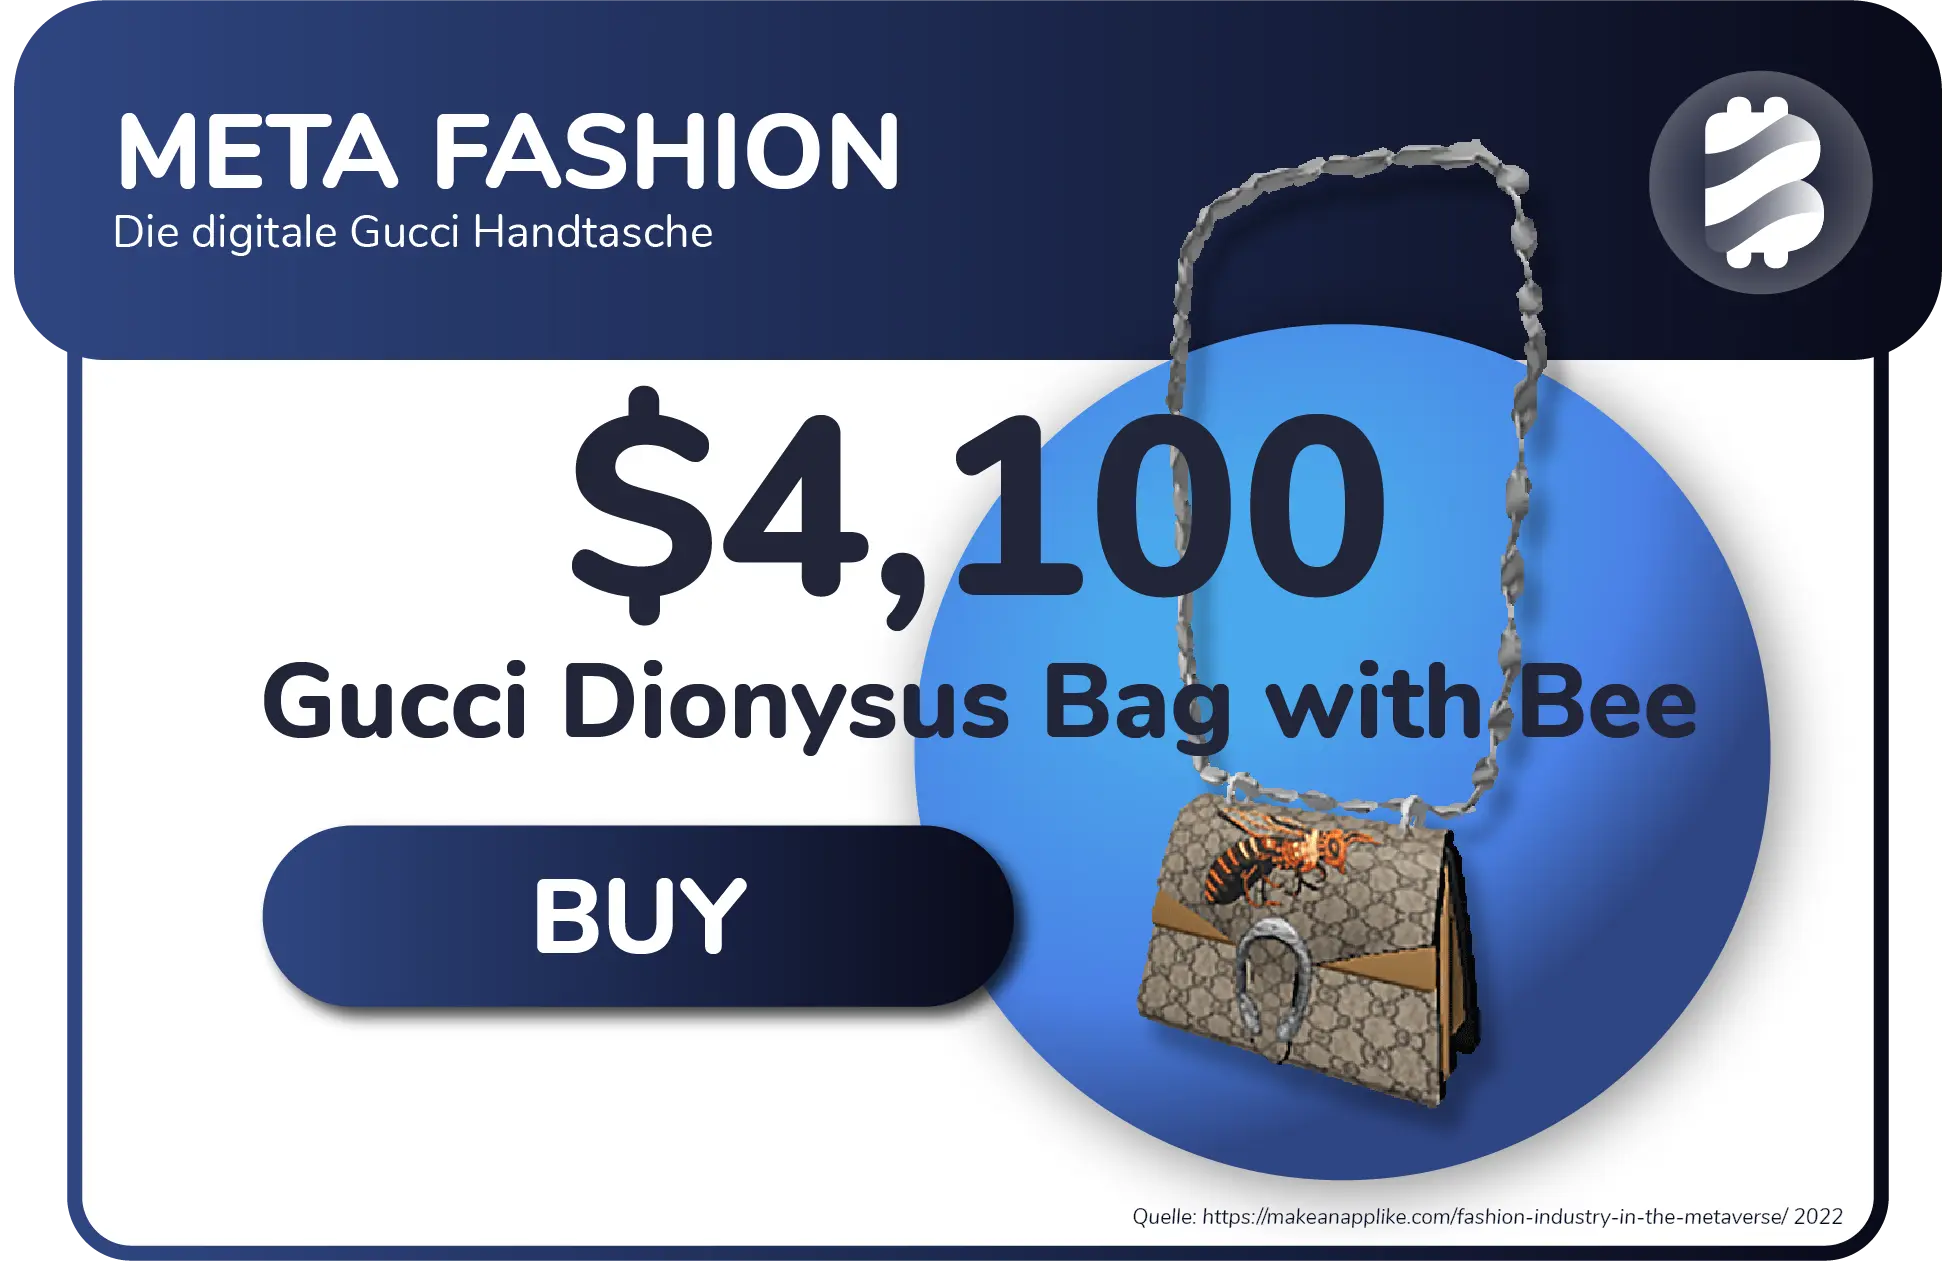 Grafik zur digitalen Gucci Handtasche im Metaverse